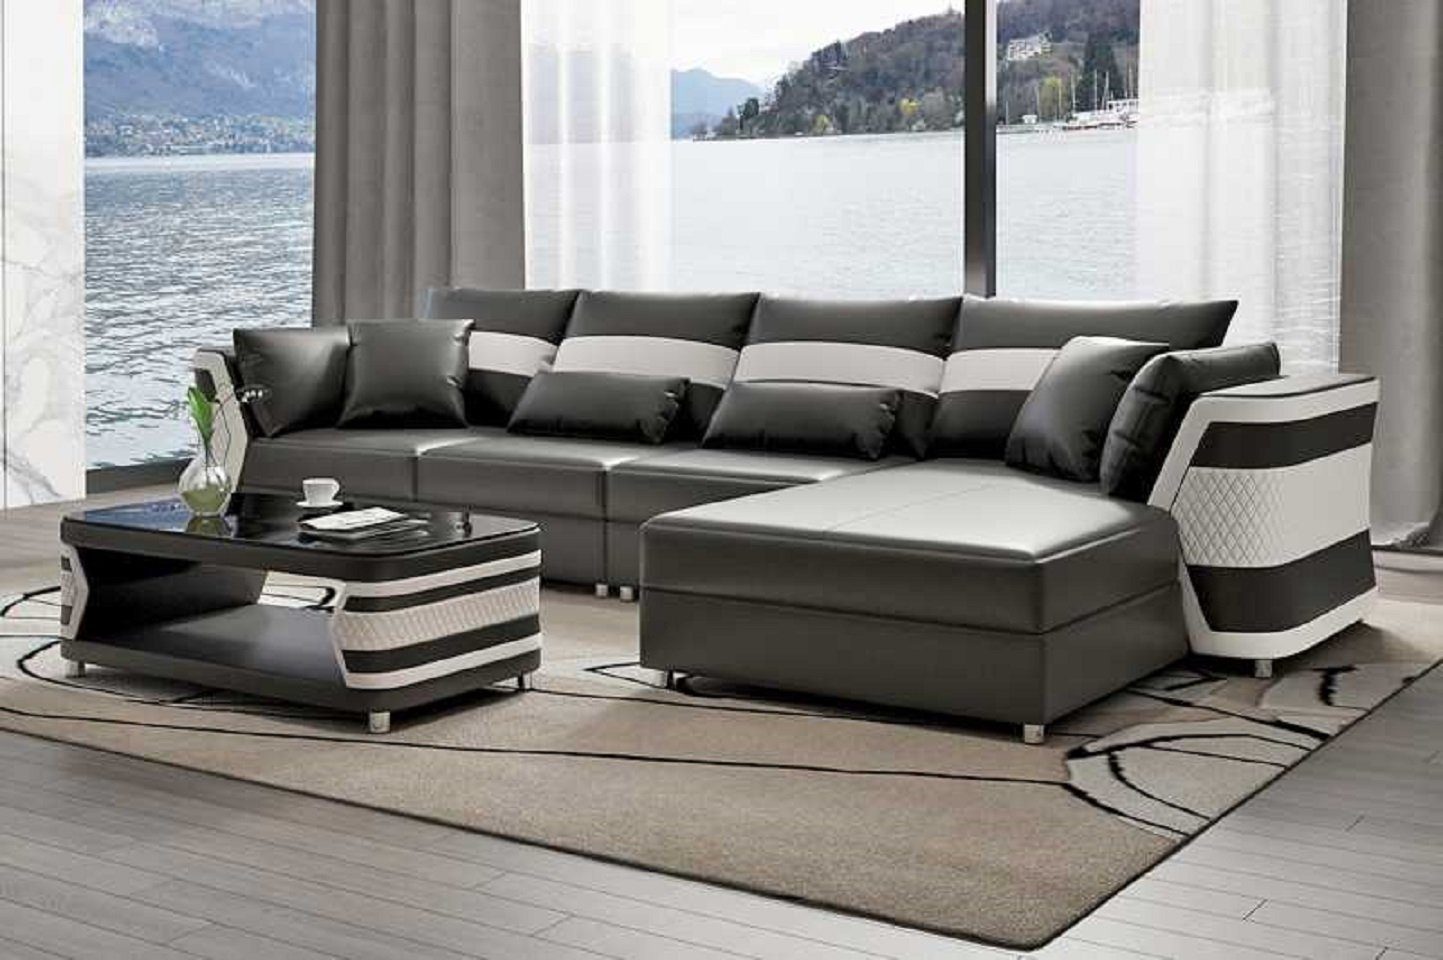 JVmoebel Ecksofa Wohnzimmer Ecksofa L Form Couch Sofa Luxus Moderne Eckgarnitur, 3 Teile, Made in Europe Grau